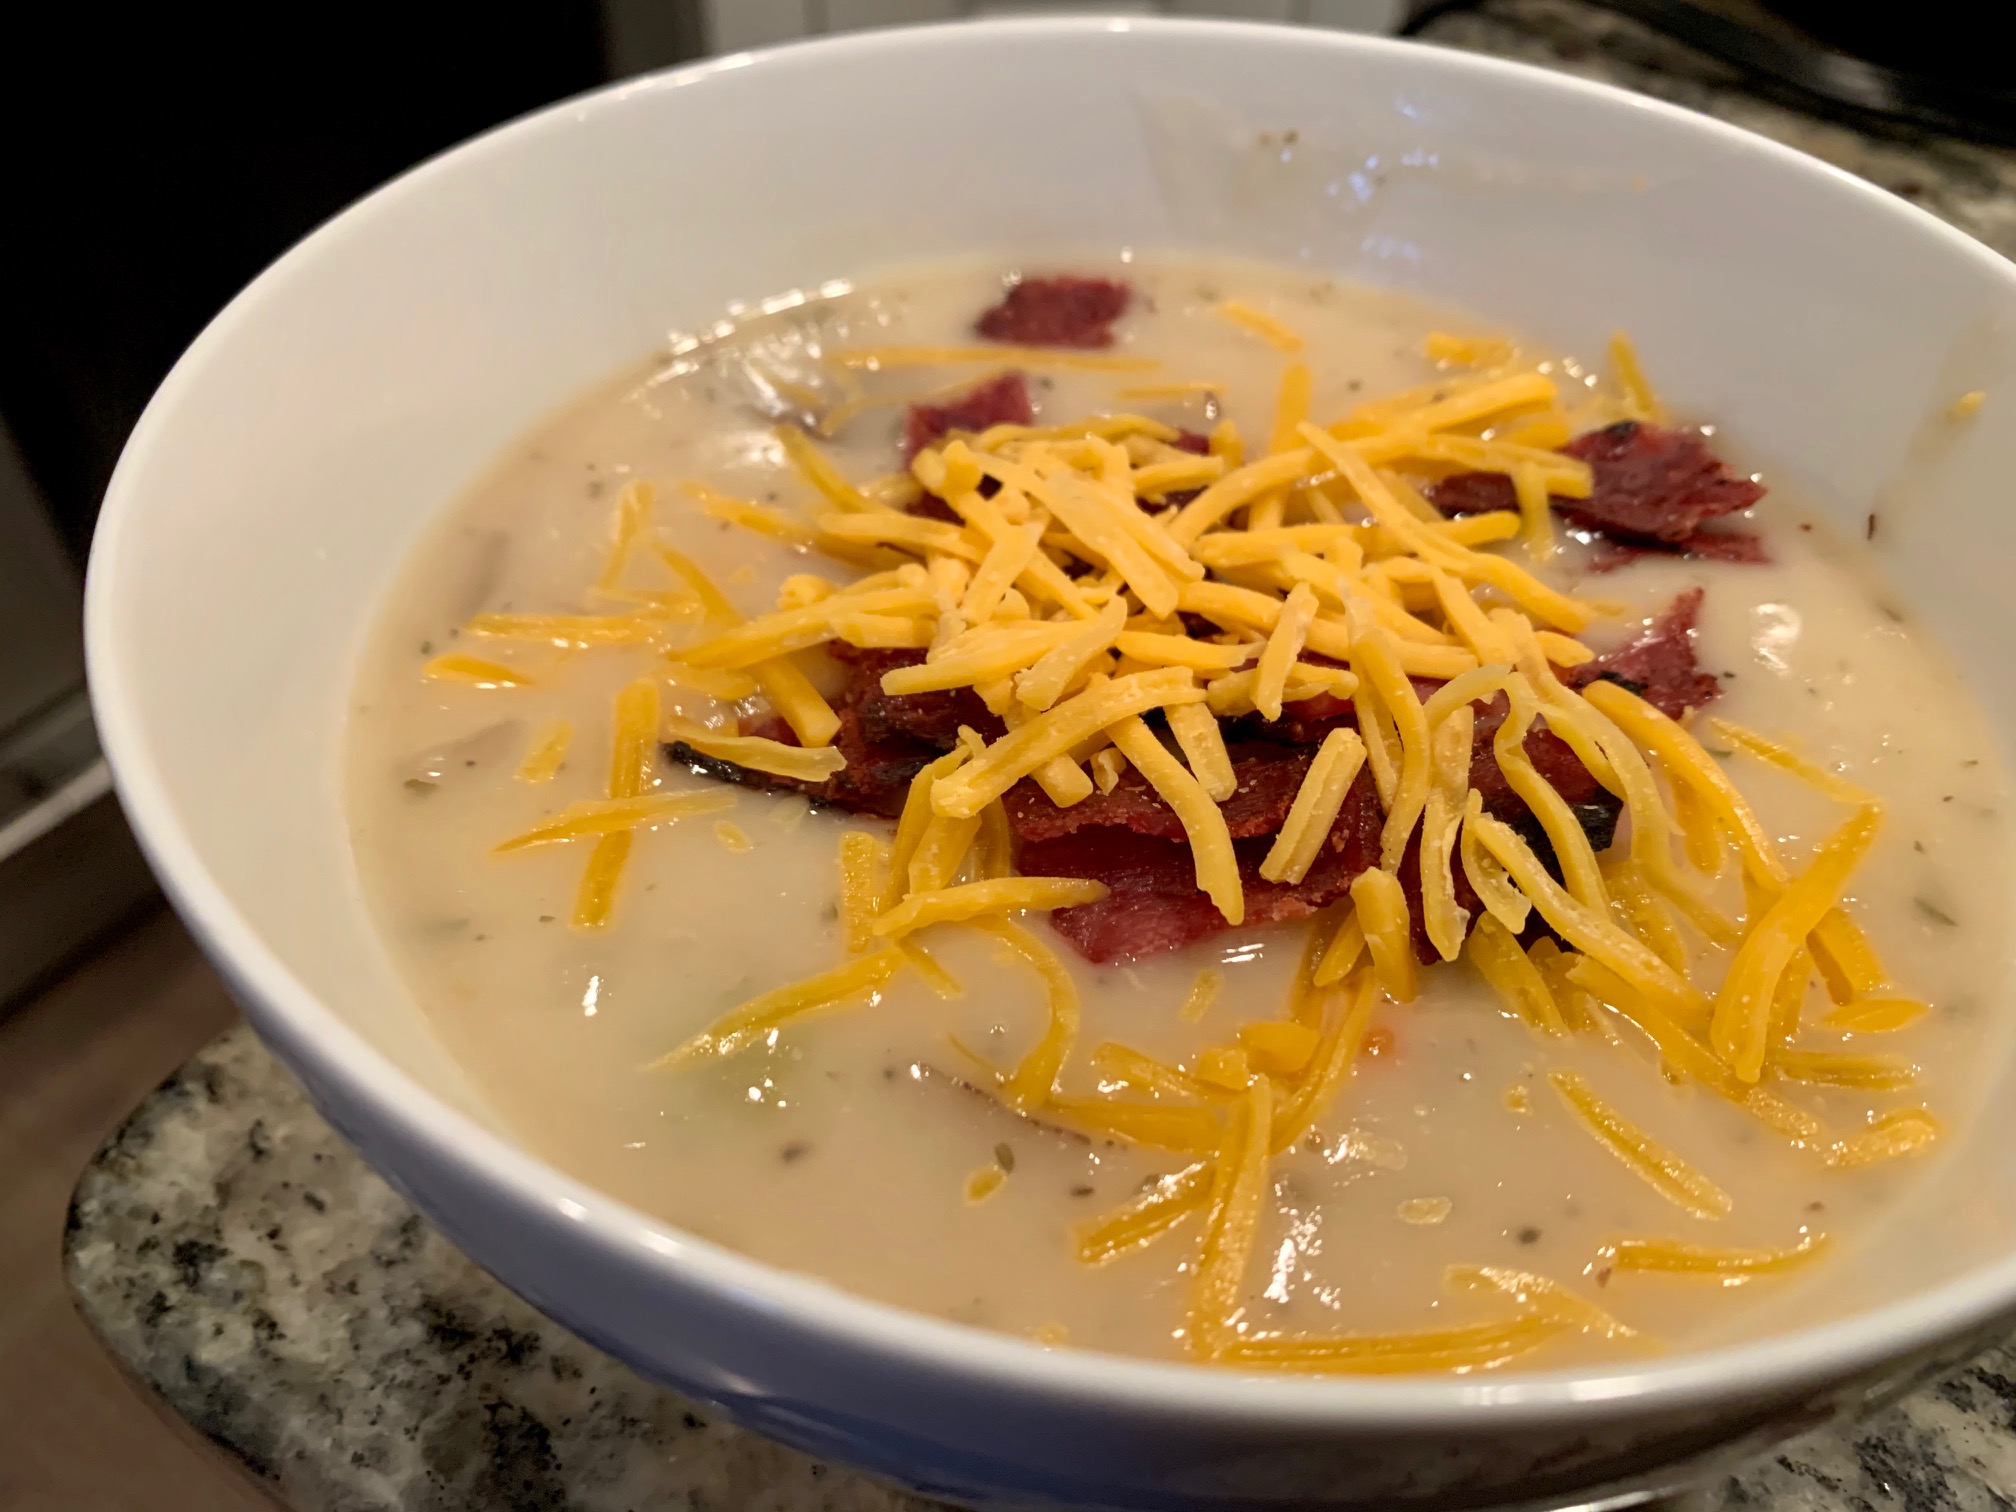 Mom's Amazing Crockpot Baked Potato Soup